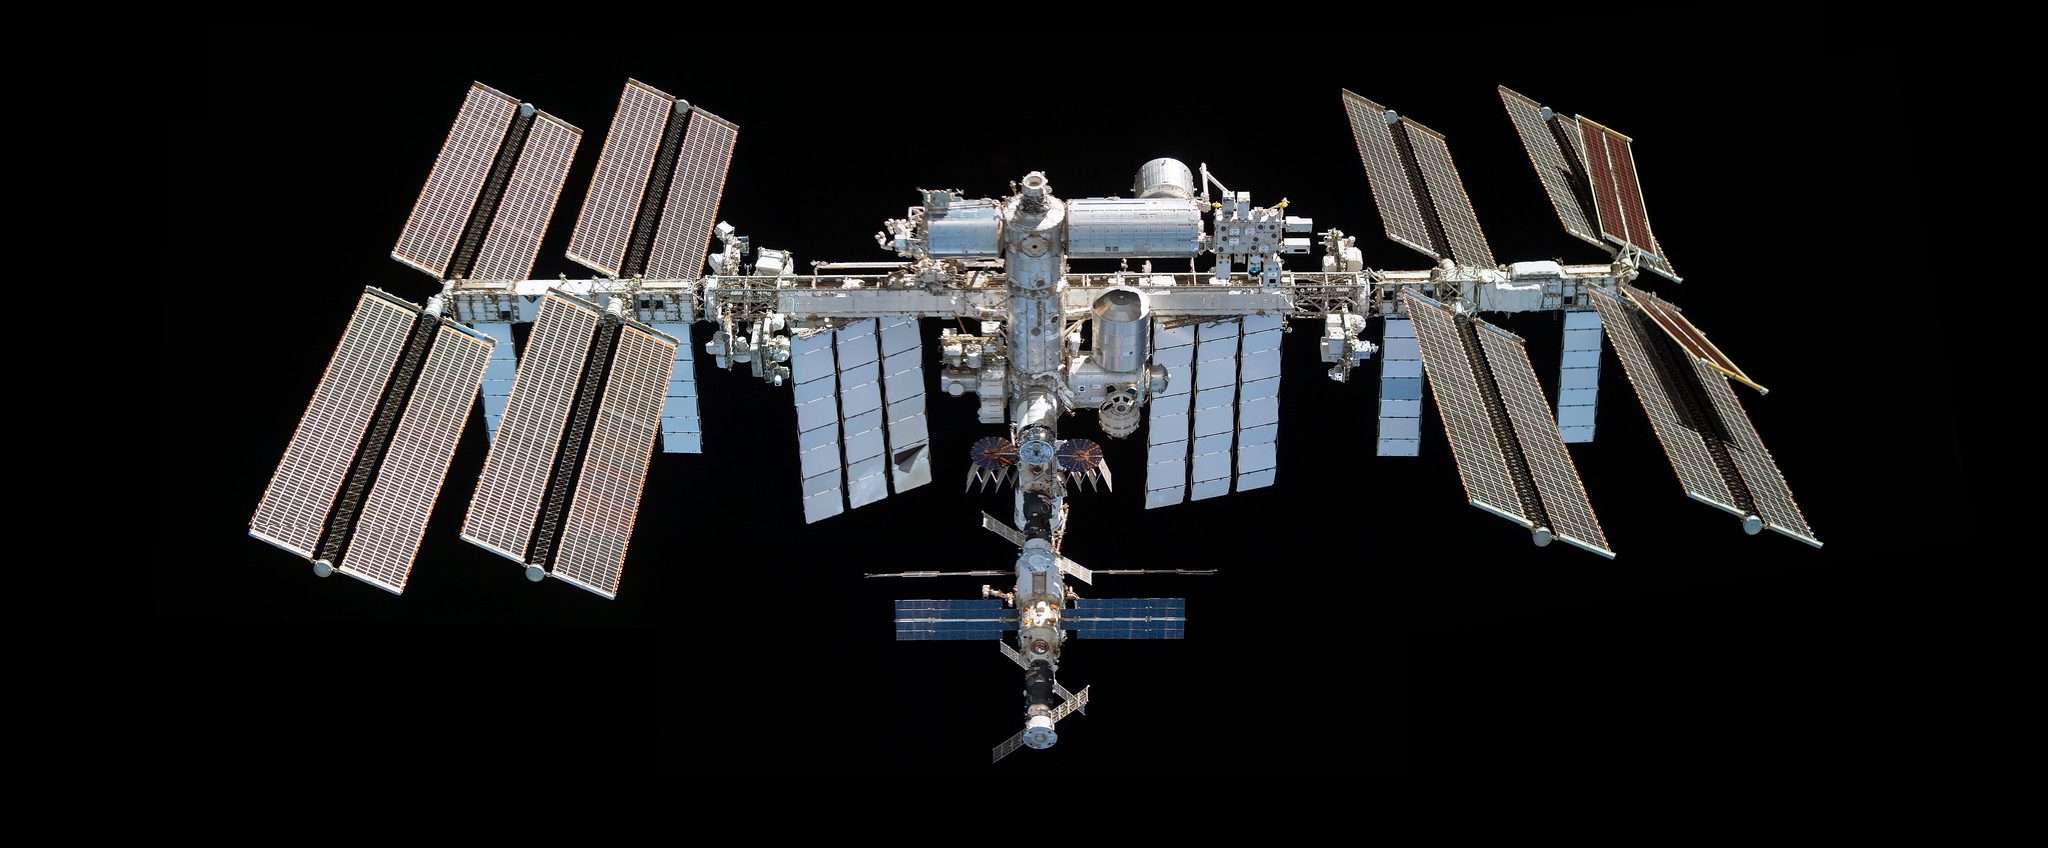 ISS: fotografati gli astronauti nella passeggiata spaziale